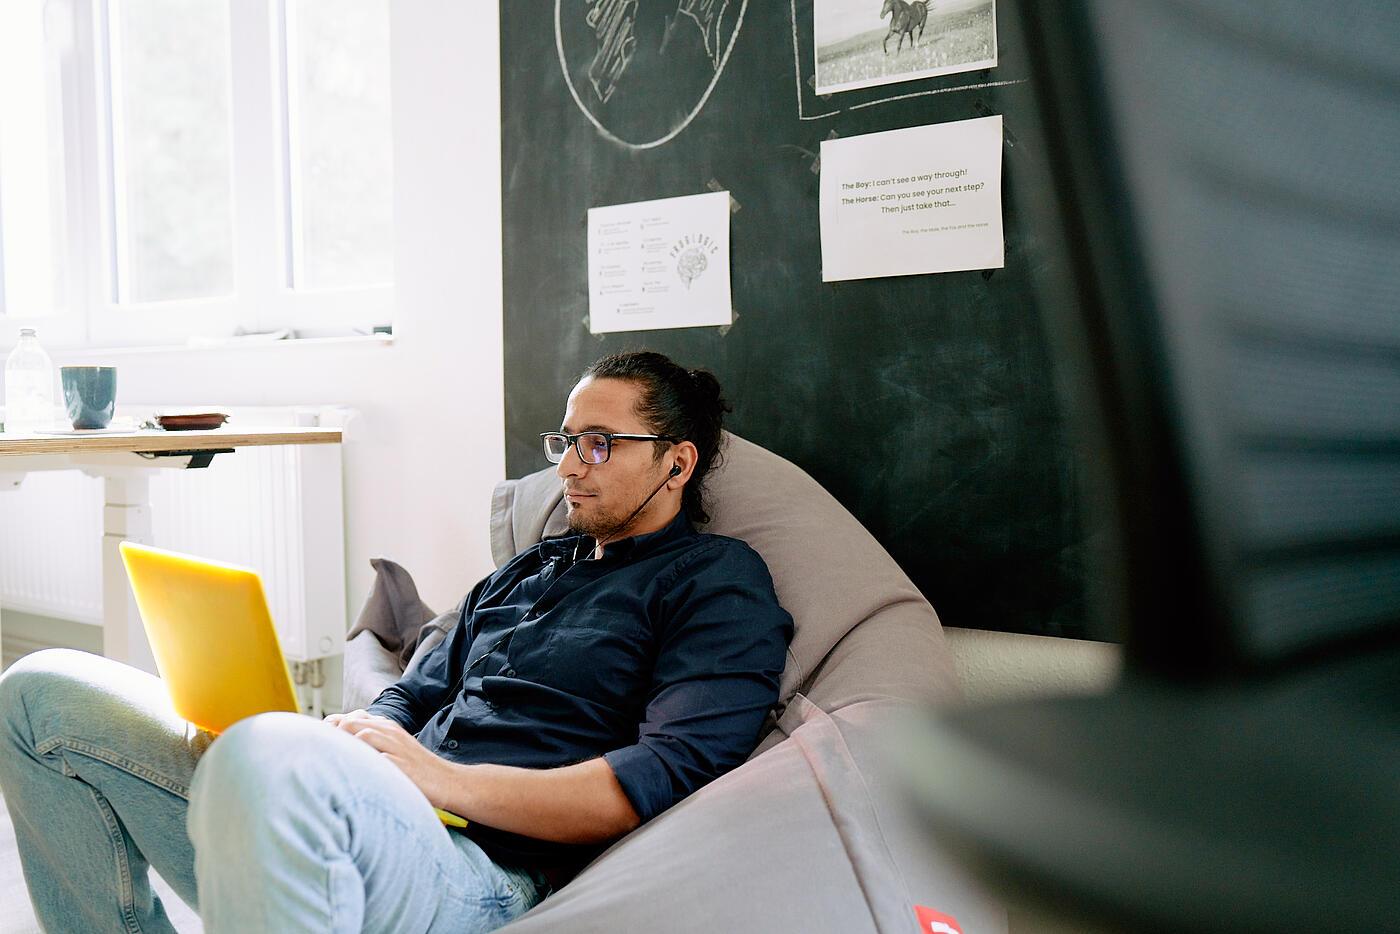 Ein Mitarbeiter aus dem visuellverstehen-Team sitzt entspannt in einem Sitzsack, während er arbeitet.